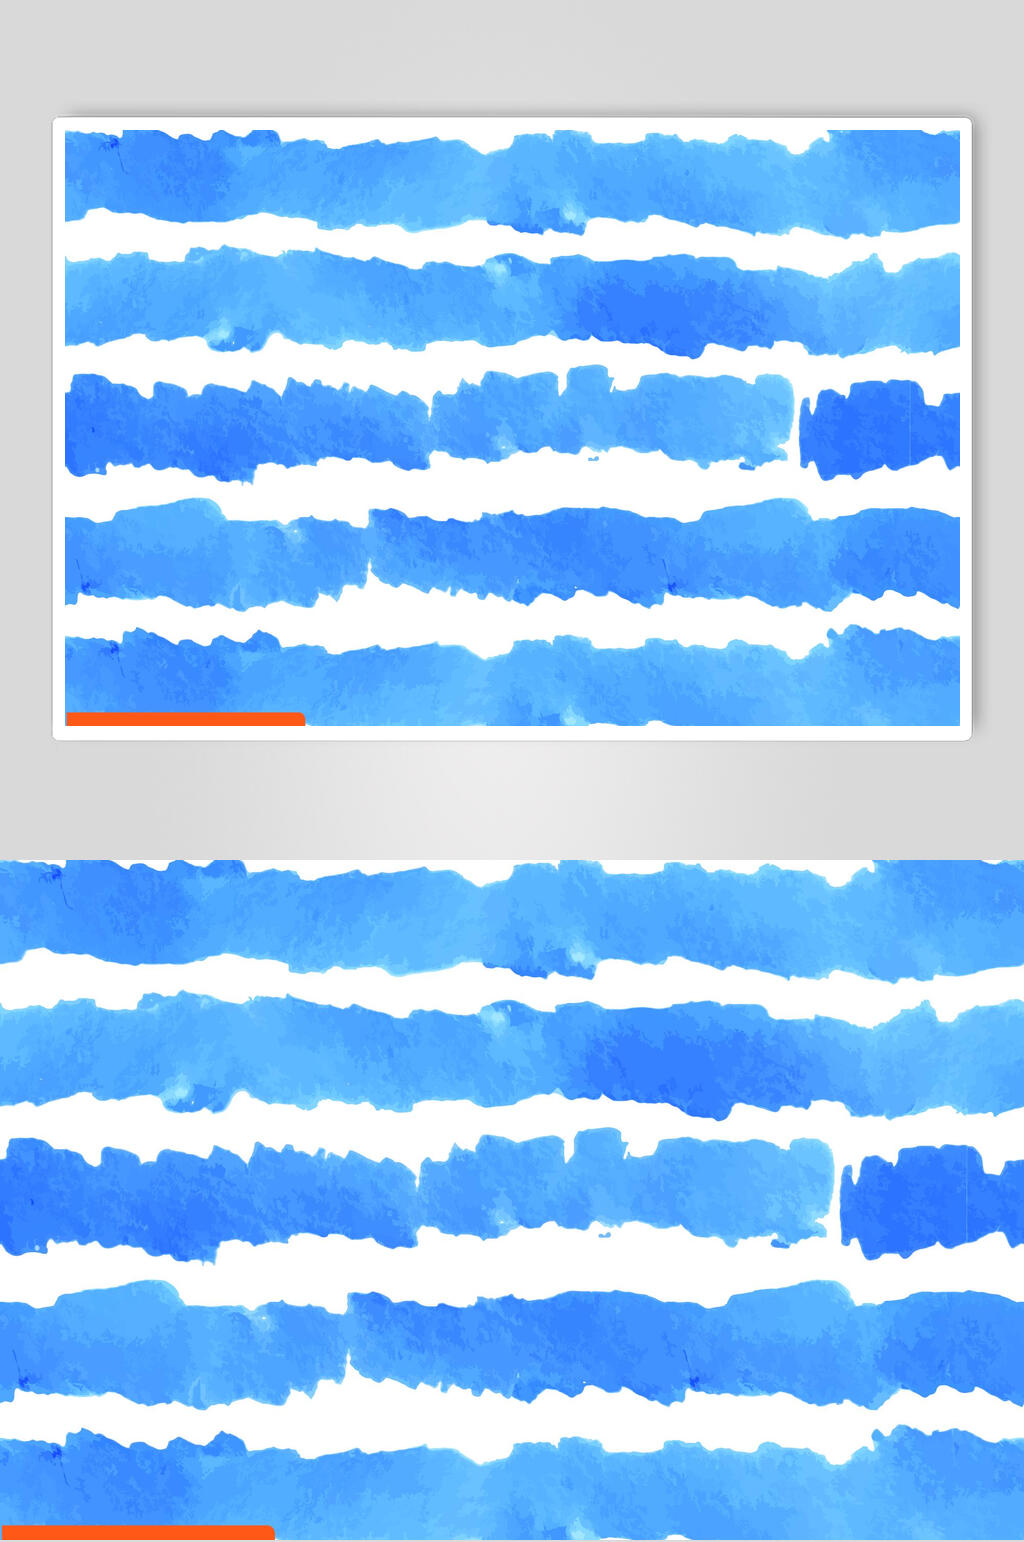 简约蓝色清新高级感水波纹矢量素材立即下载蓝色渐变水波纹矢量素材